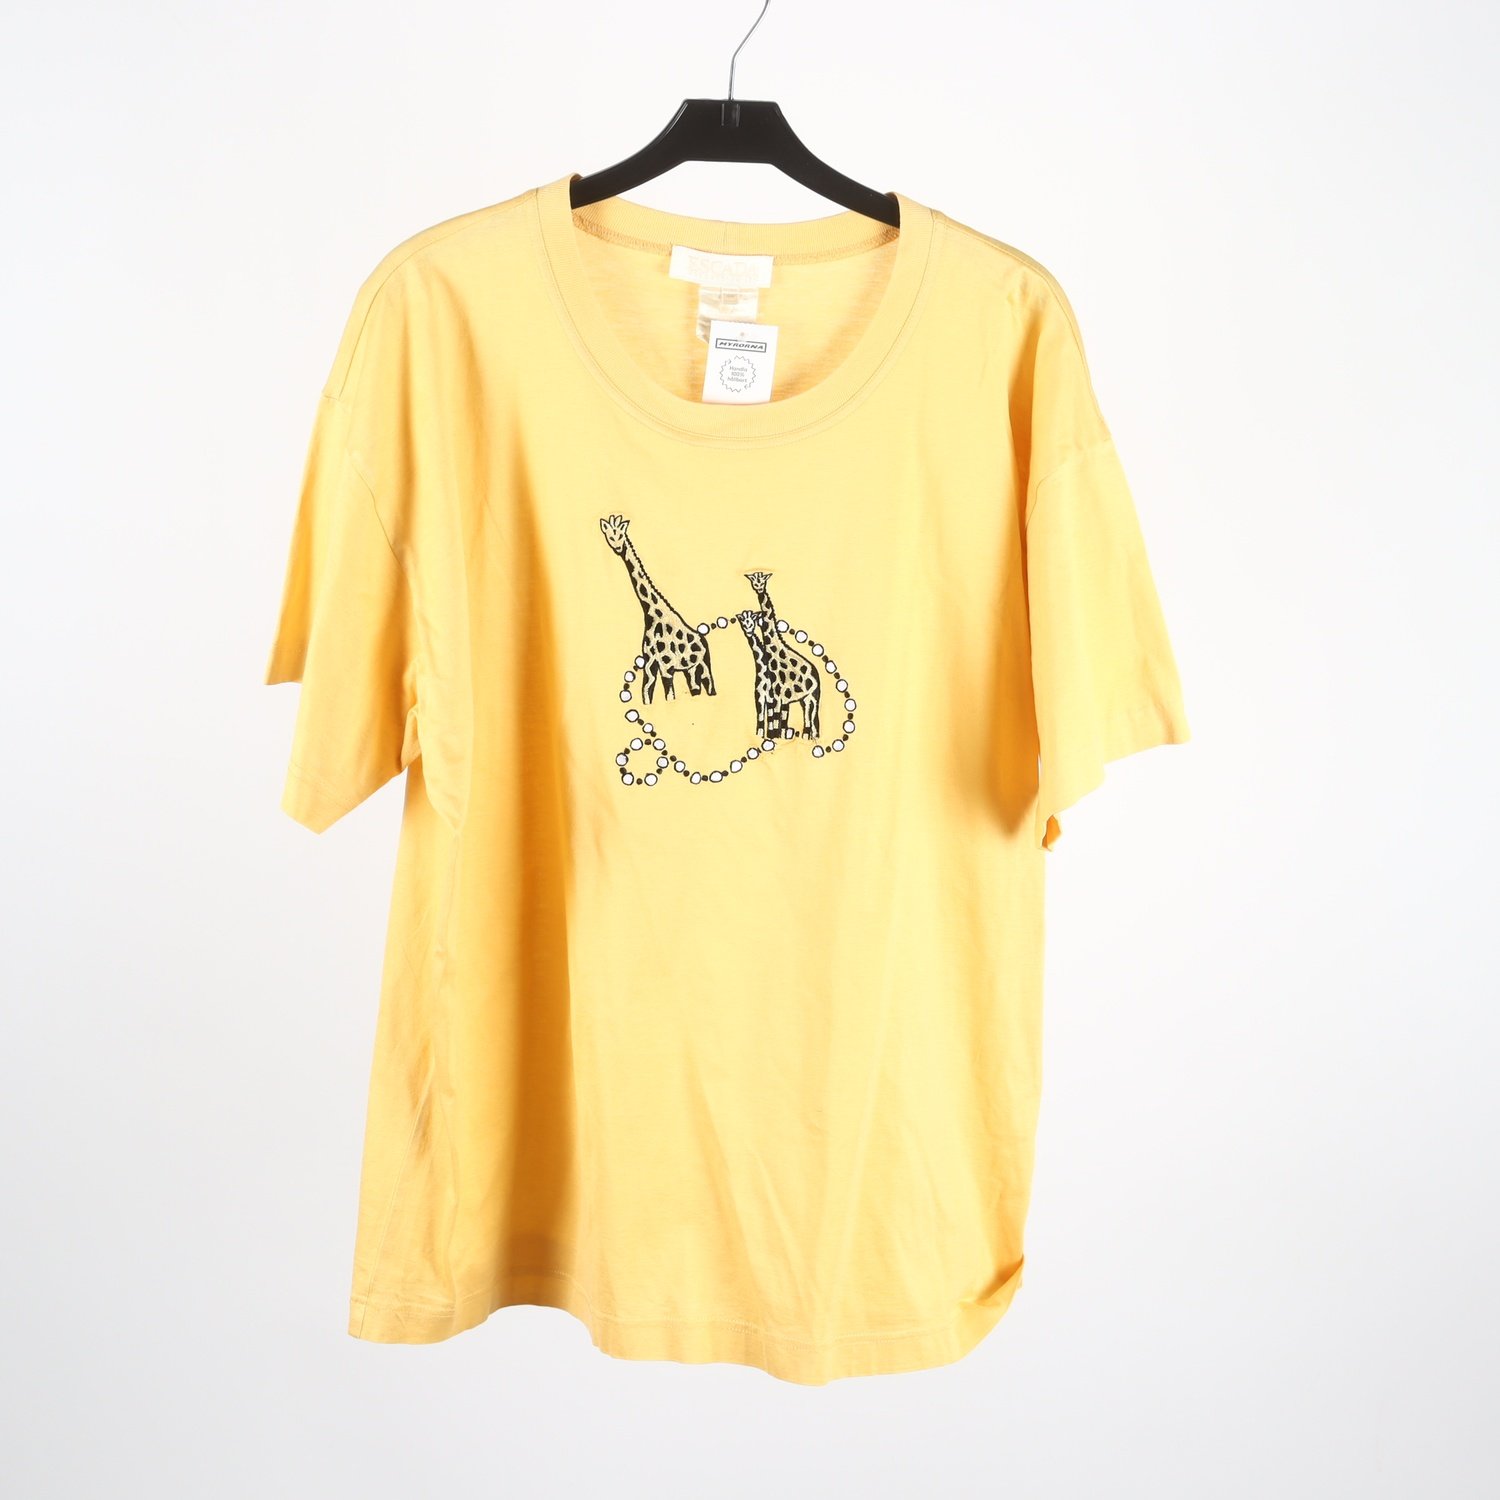 T-shirt, Escada, gul, giraffer, stl. 44